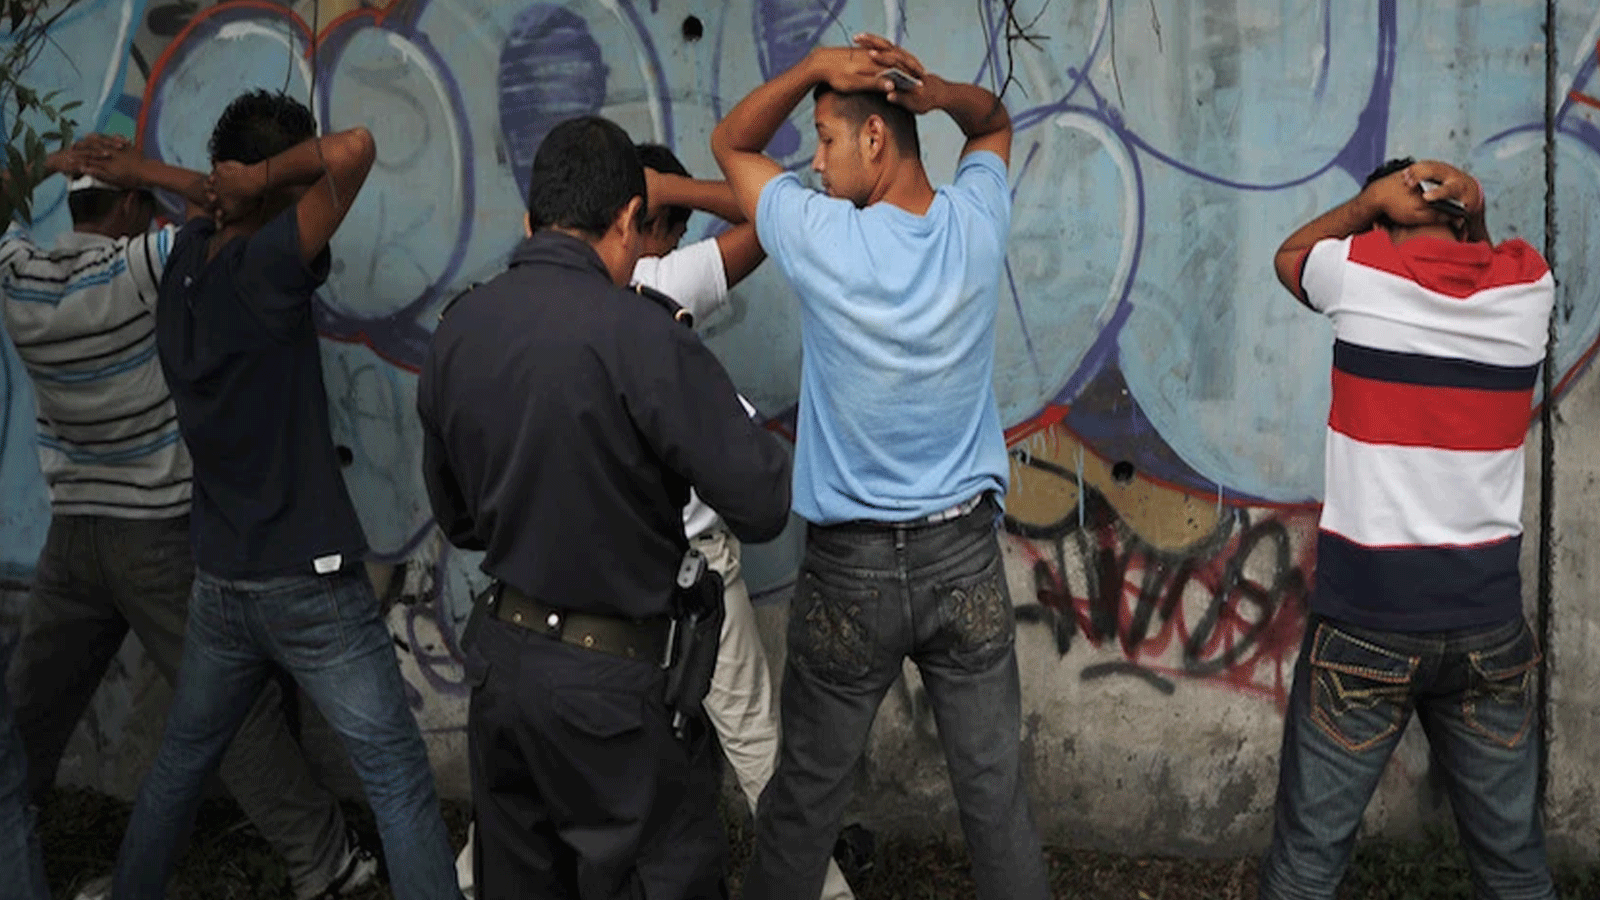 الشرطة تلقي القبض على أعضاء مزعومين من عصابة MS-13 خلال اجتماع لأفضل الممارسات في عمليات السلام وبناء المجتمع والتدخل وإعادة الإدماج نظمته منظمة الدول الأميركية في إيلوبانغو ، السلفادور في 20سبتمبر\ أيلول 2020 